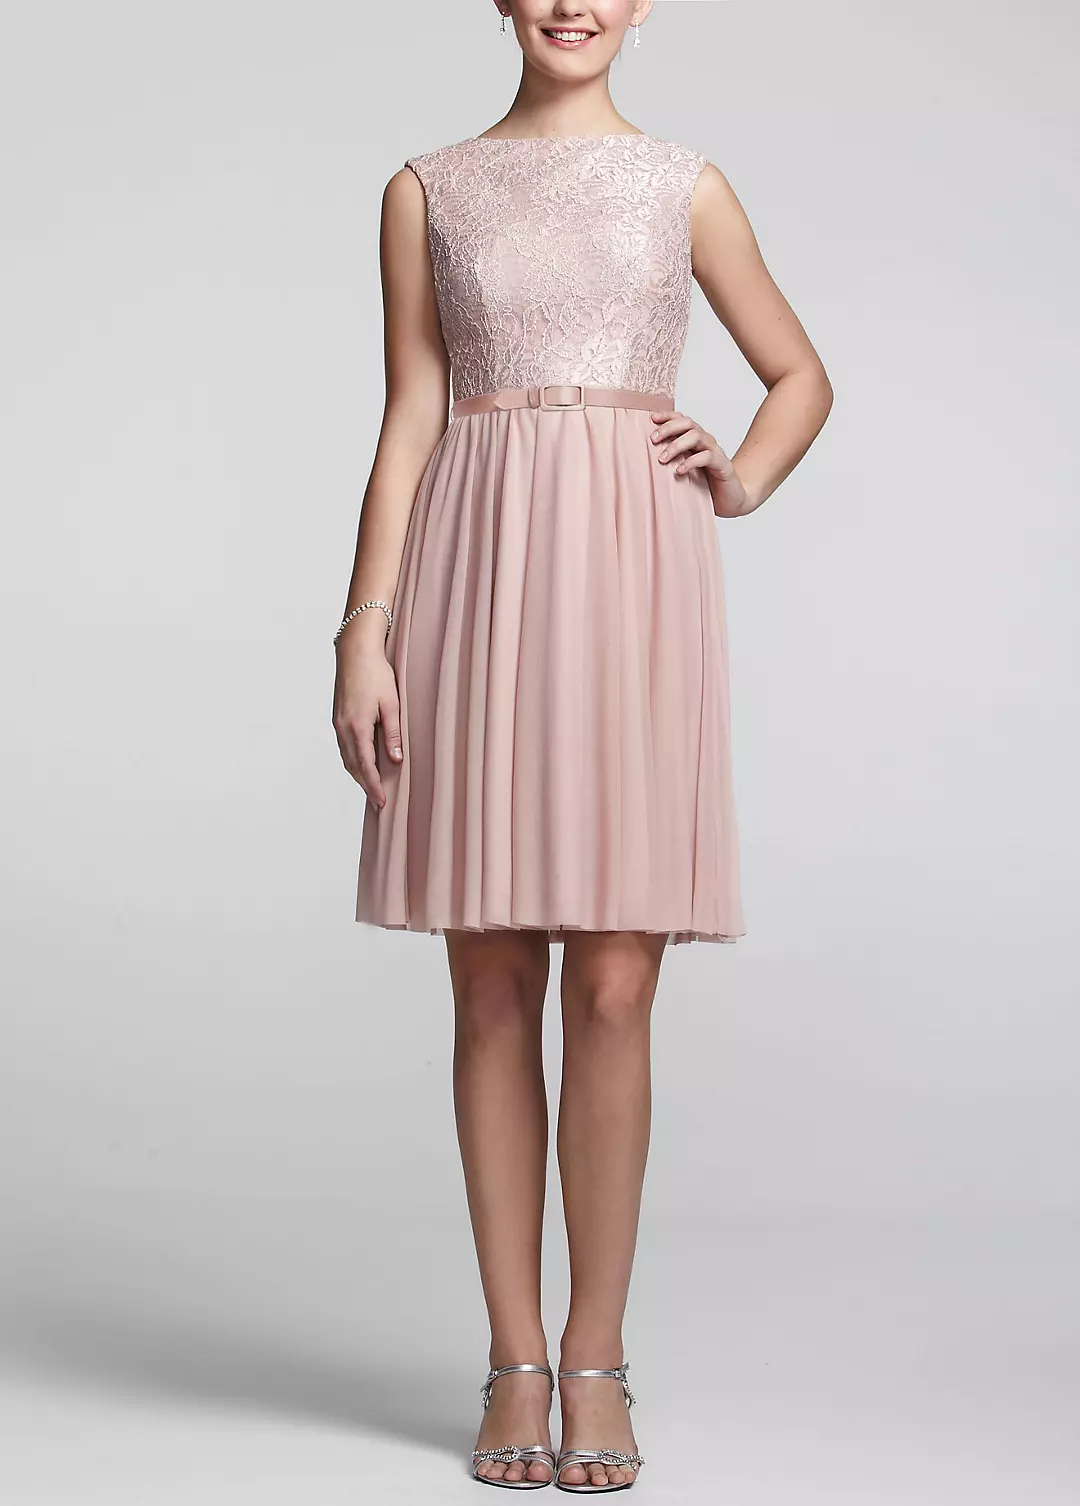 Sleeveless Lace Bodice Dress with Belt Image